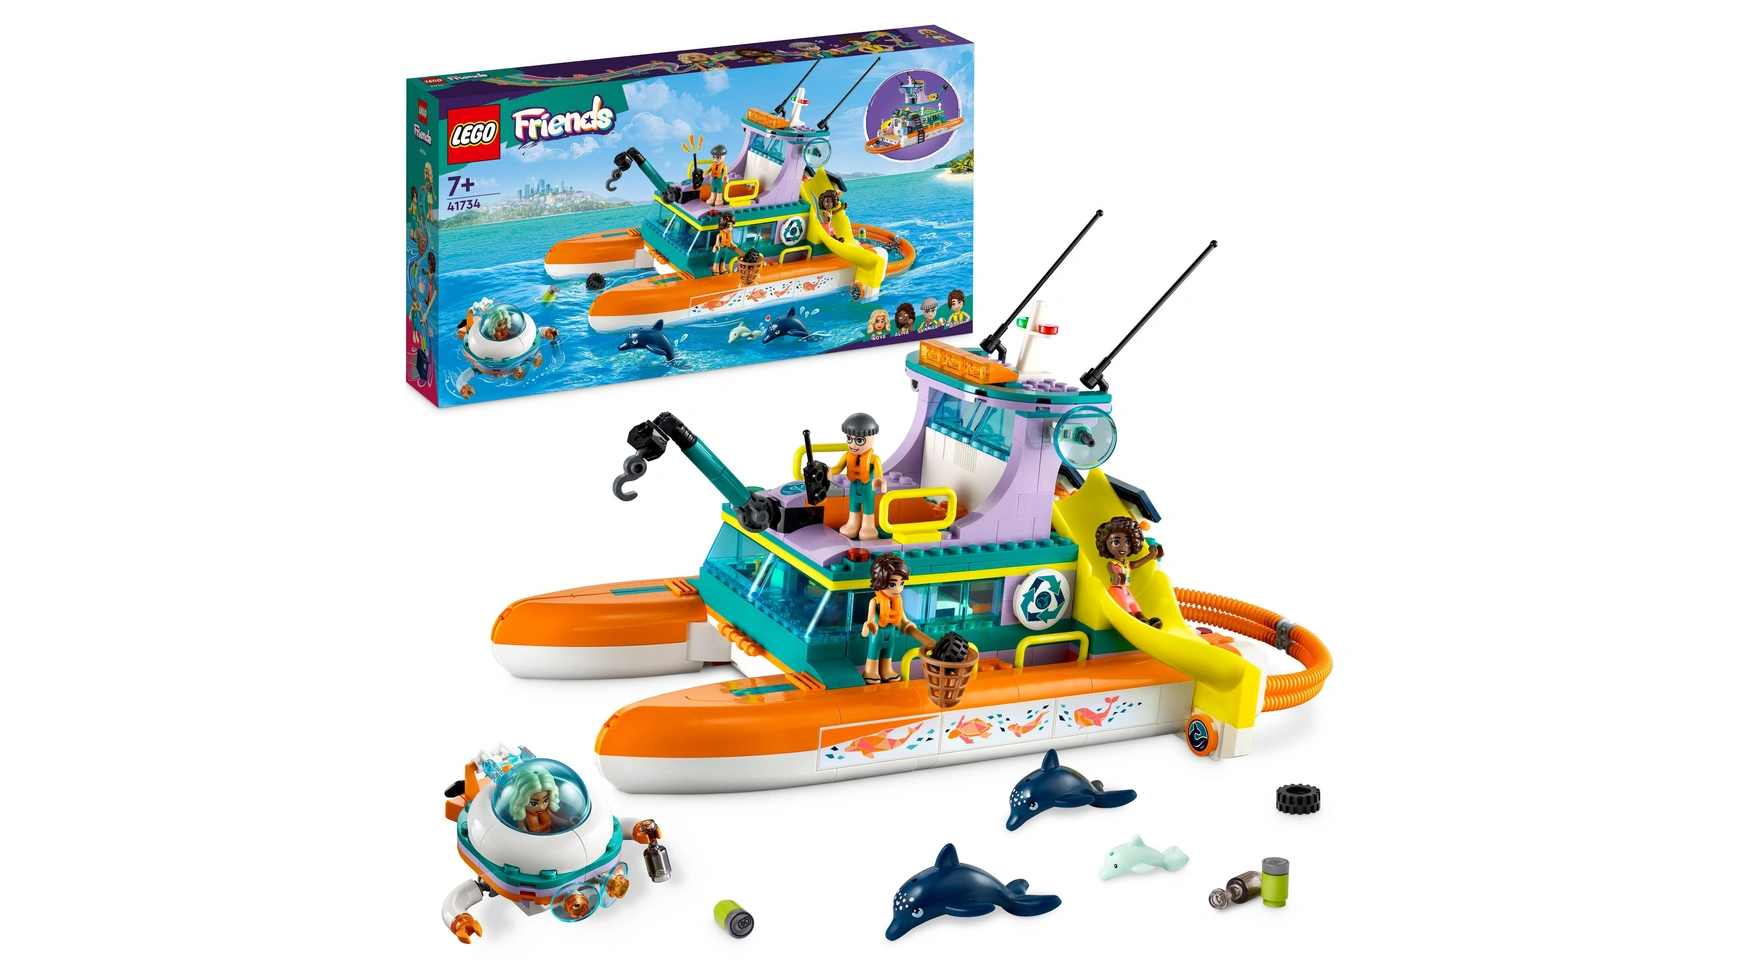 Lego Friends Набор Морской спасательный катер, игрушка с животными для детей lego friends пиццерия хартлейк сити 41705